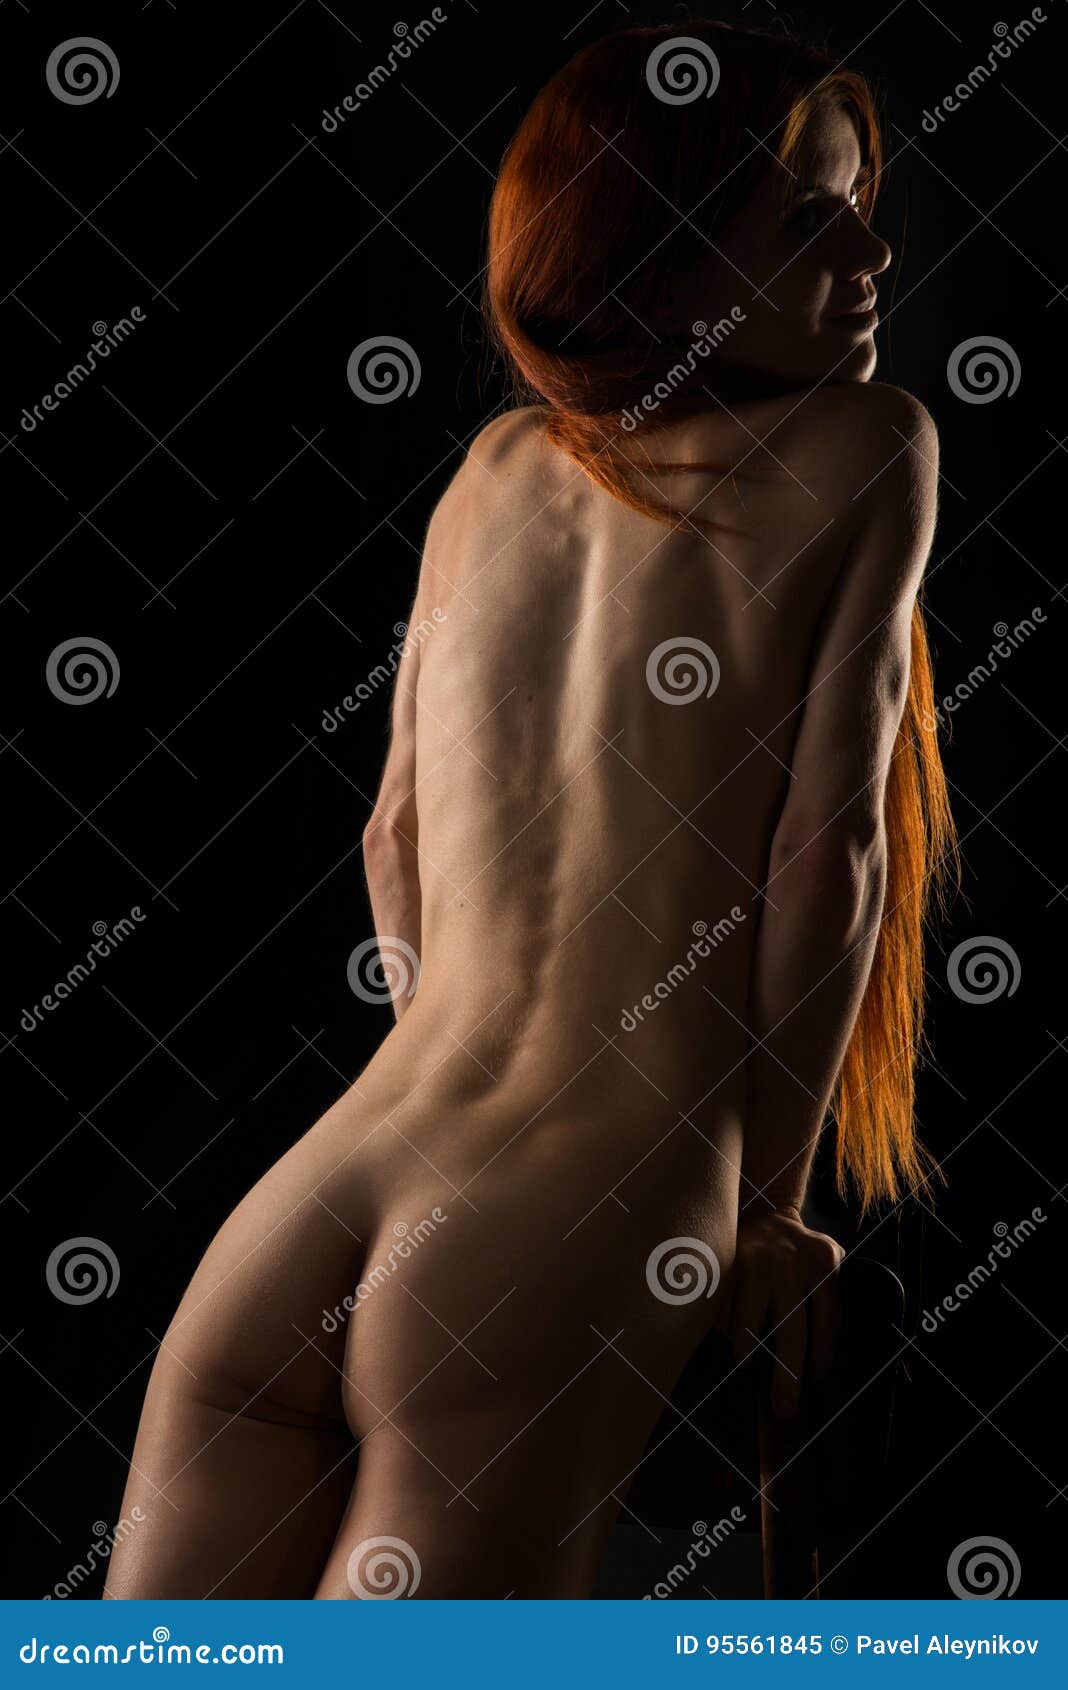 anna klos share dark red hair nude photos